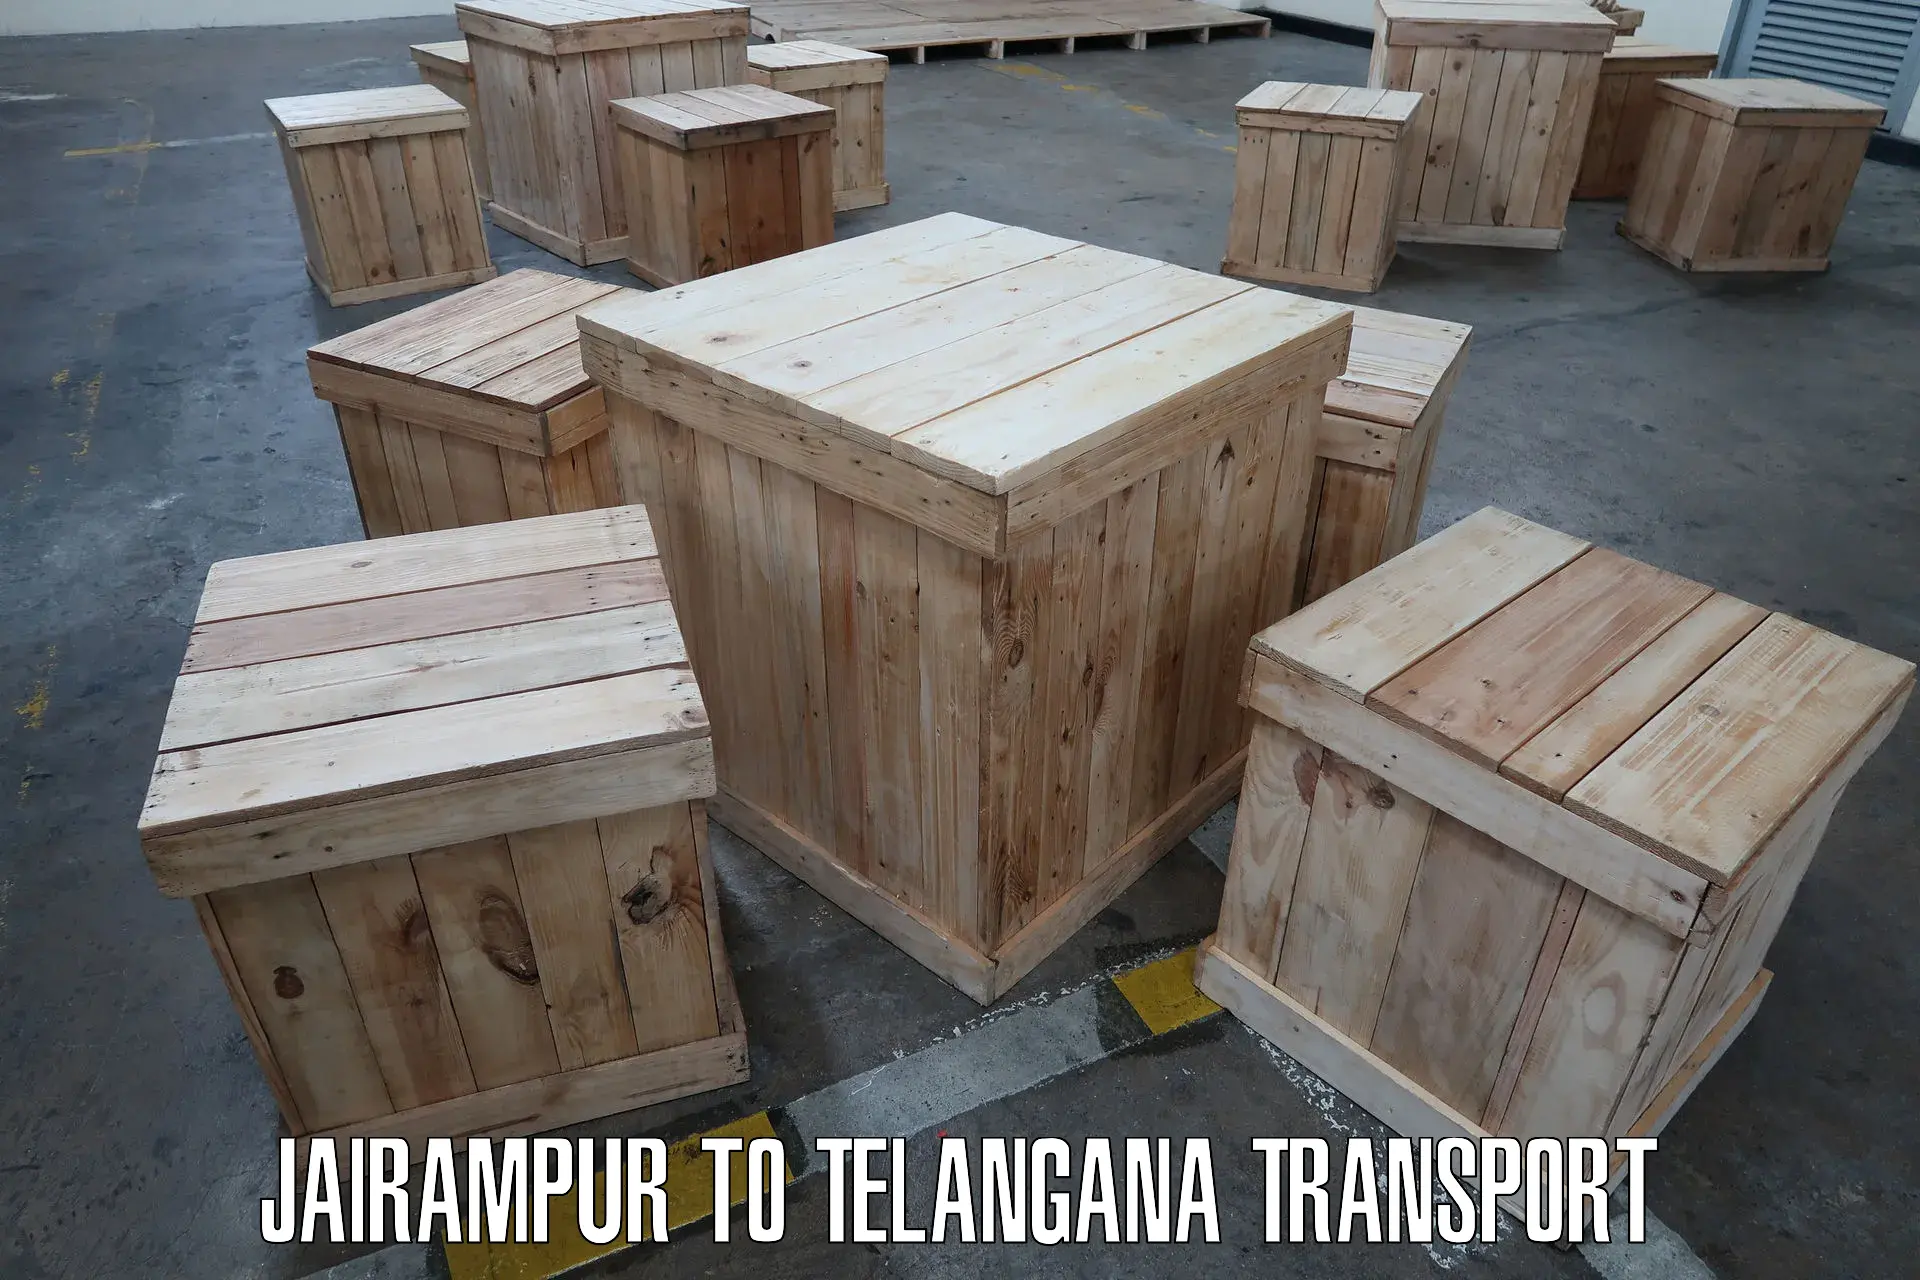 Cargo transport services in Jairampur to Gangadhara